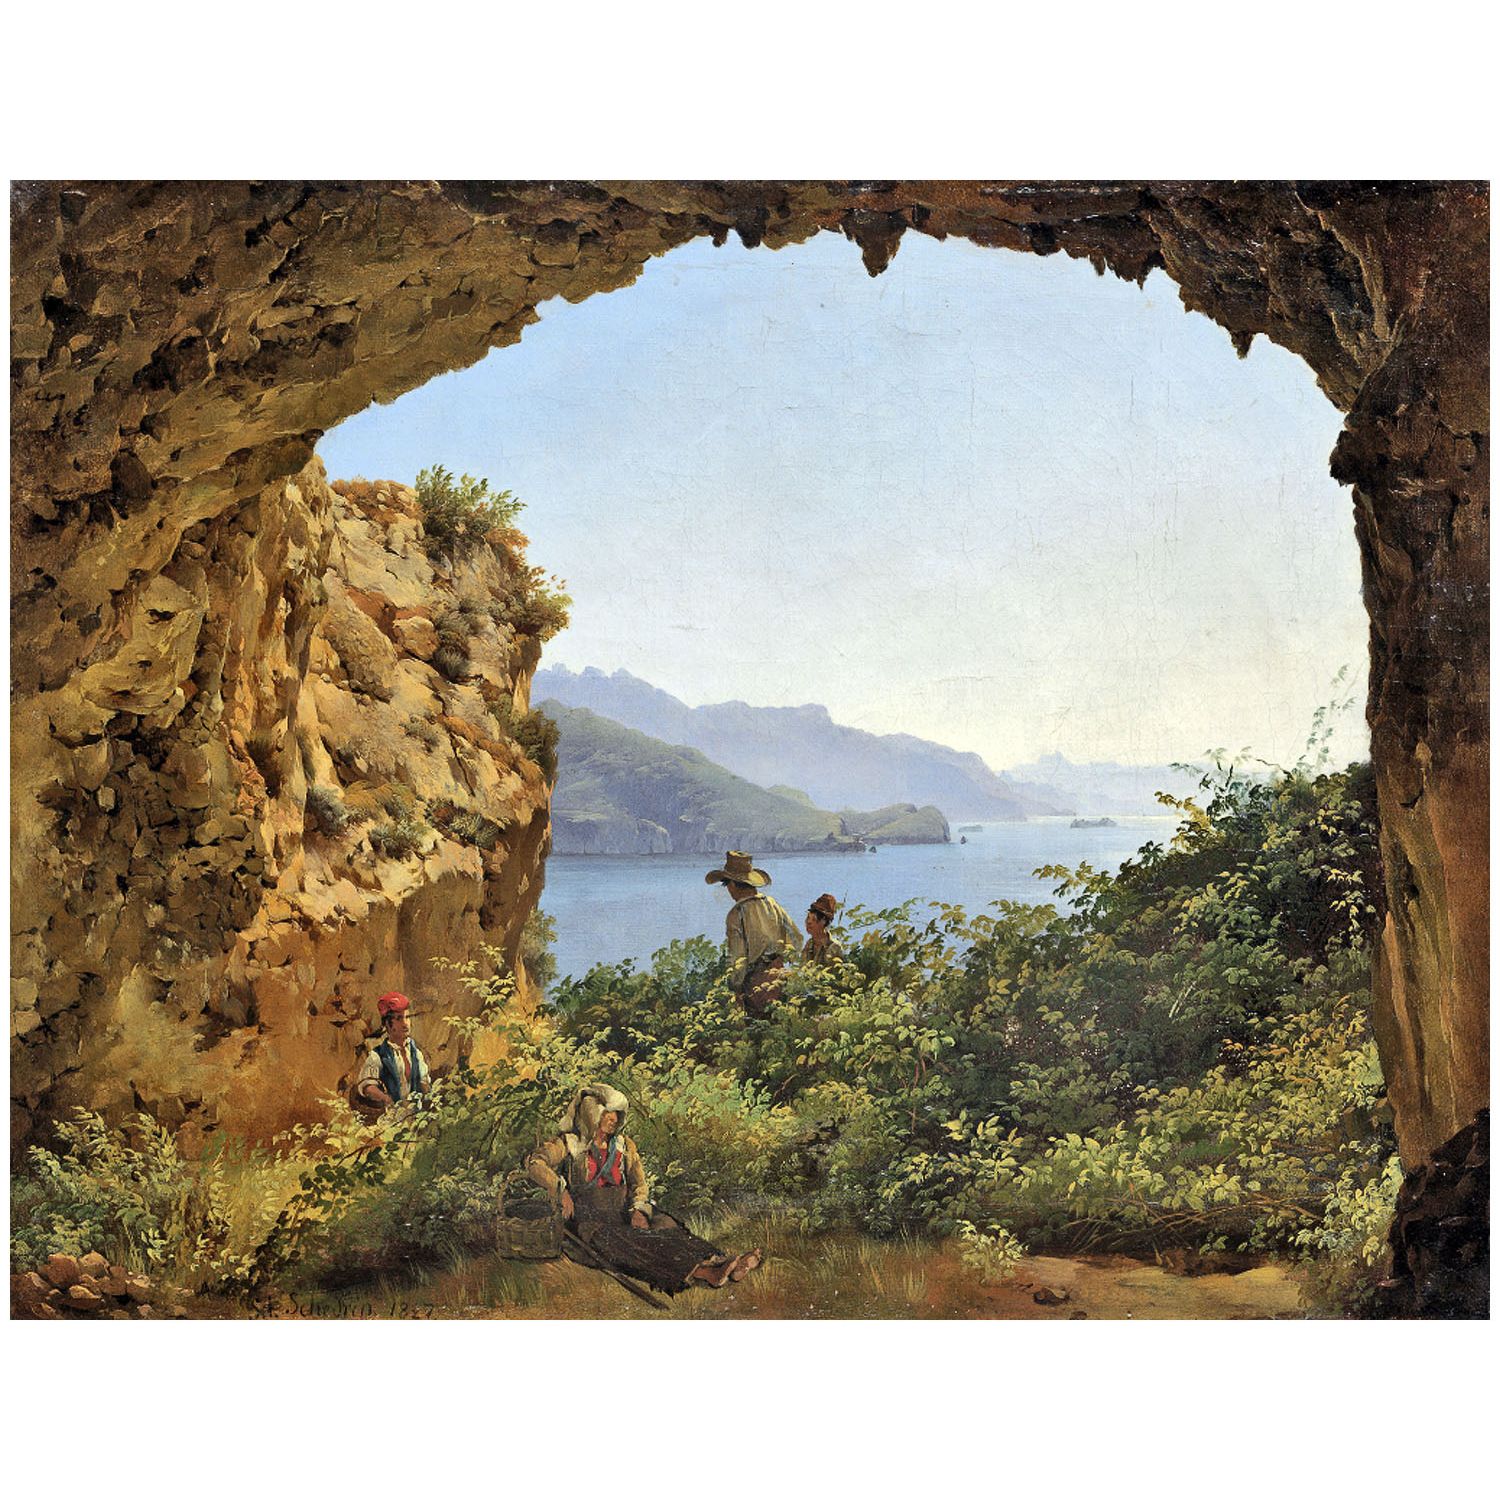 Сильвестр Щедрин. Грот Матроманио на острове Капри. 1827. Третьяковская галерея